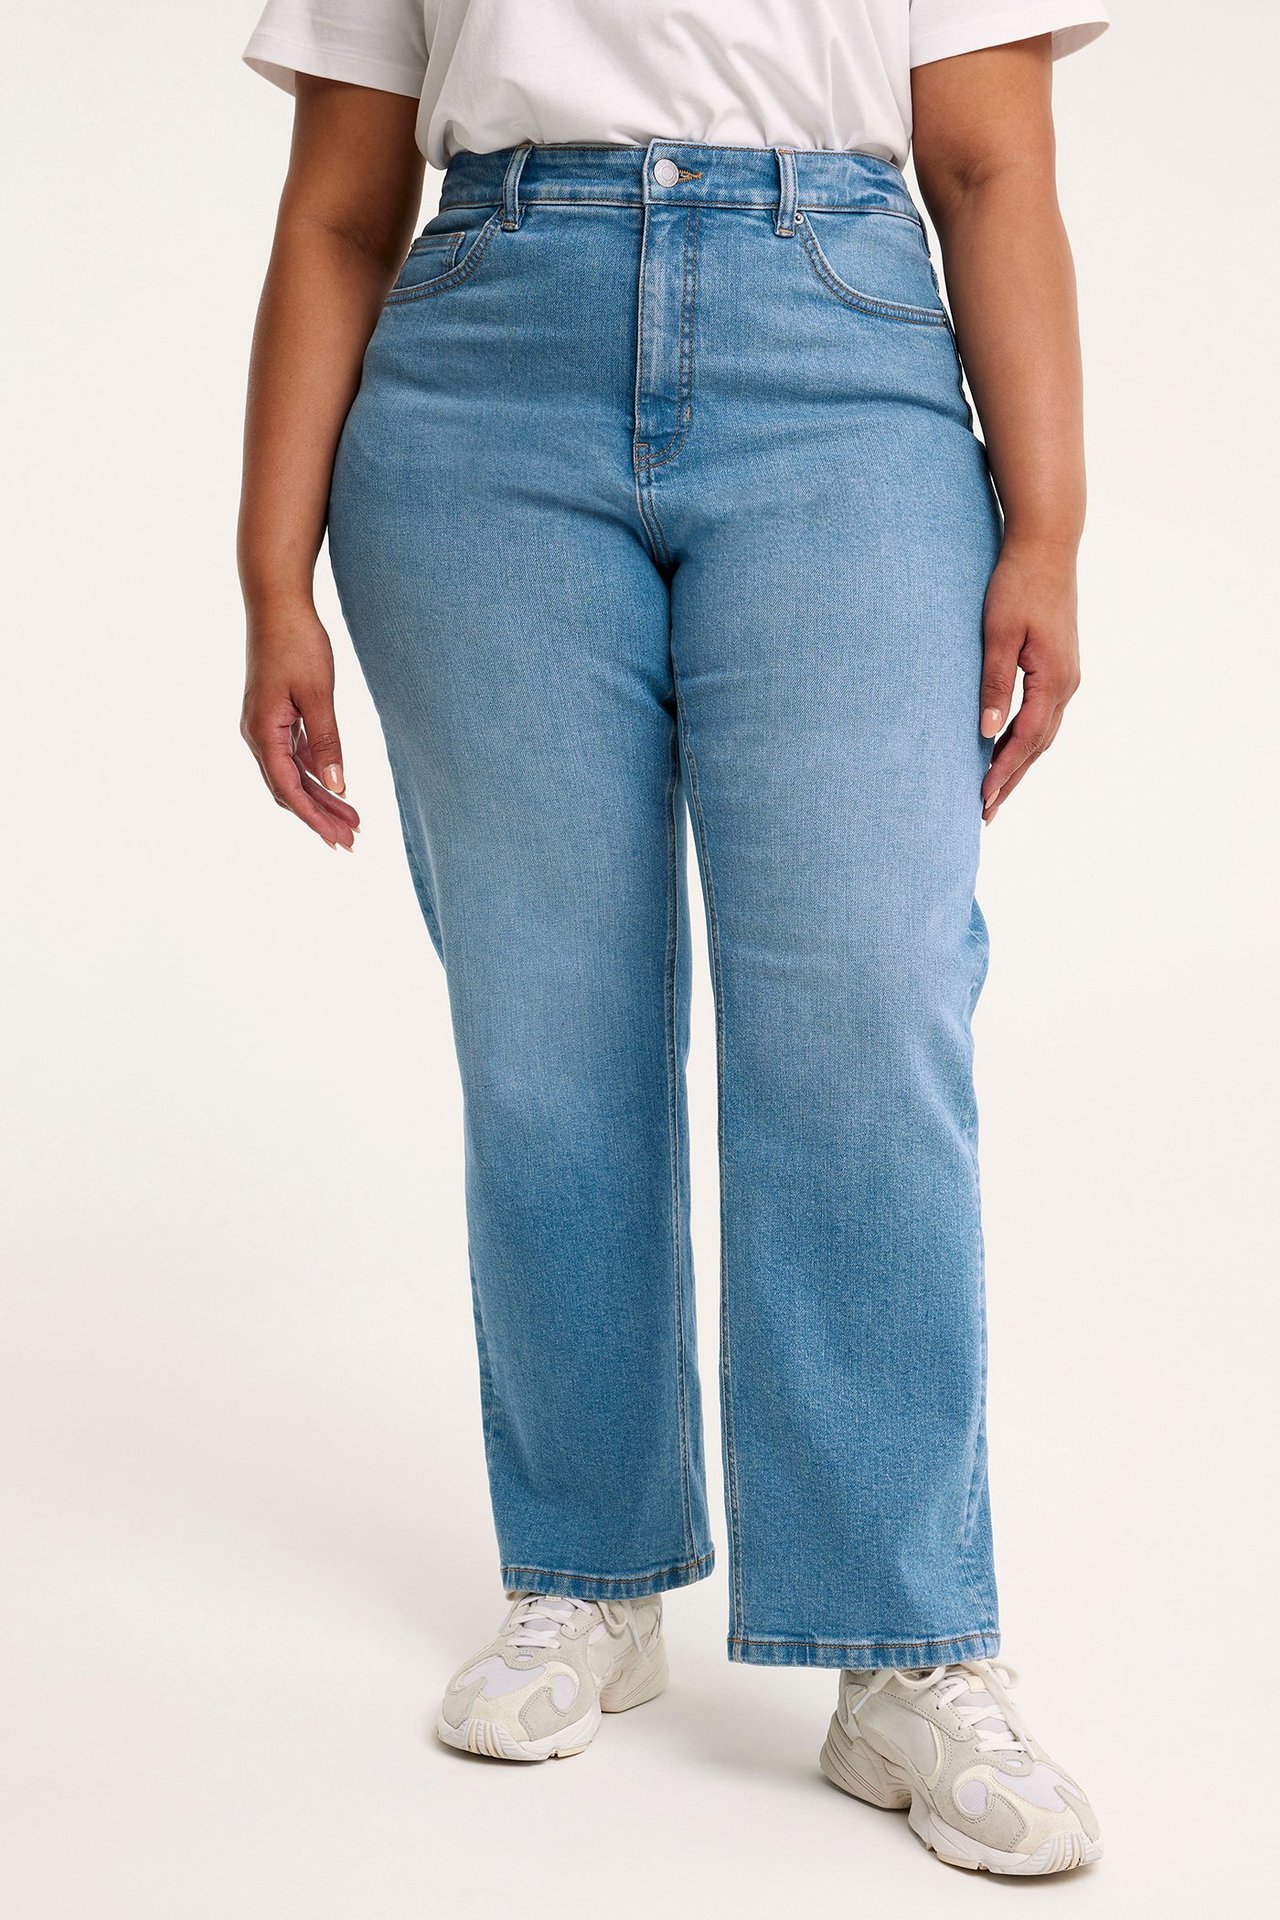 Ariel straght jeans Vaalea denimi - null - 3